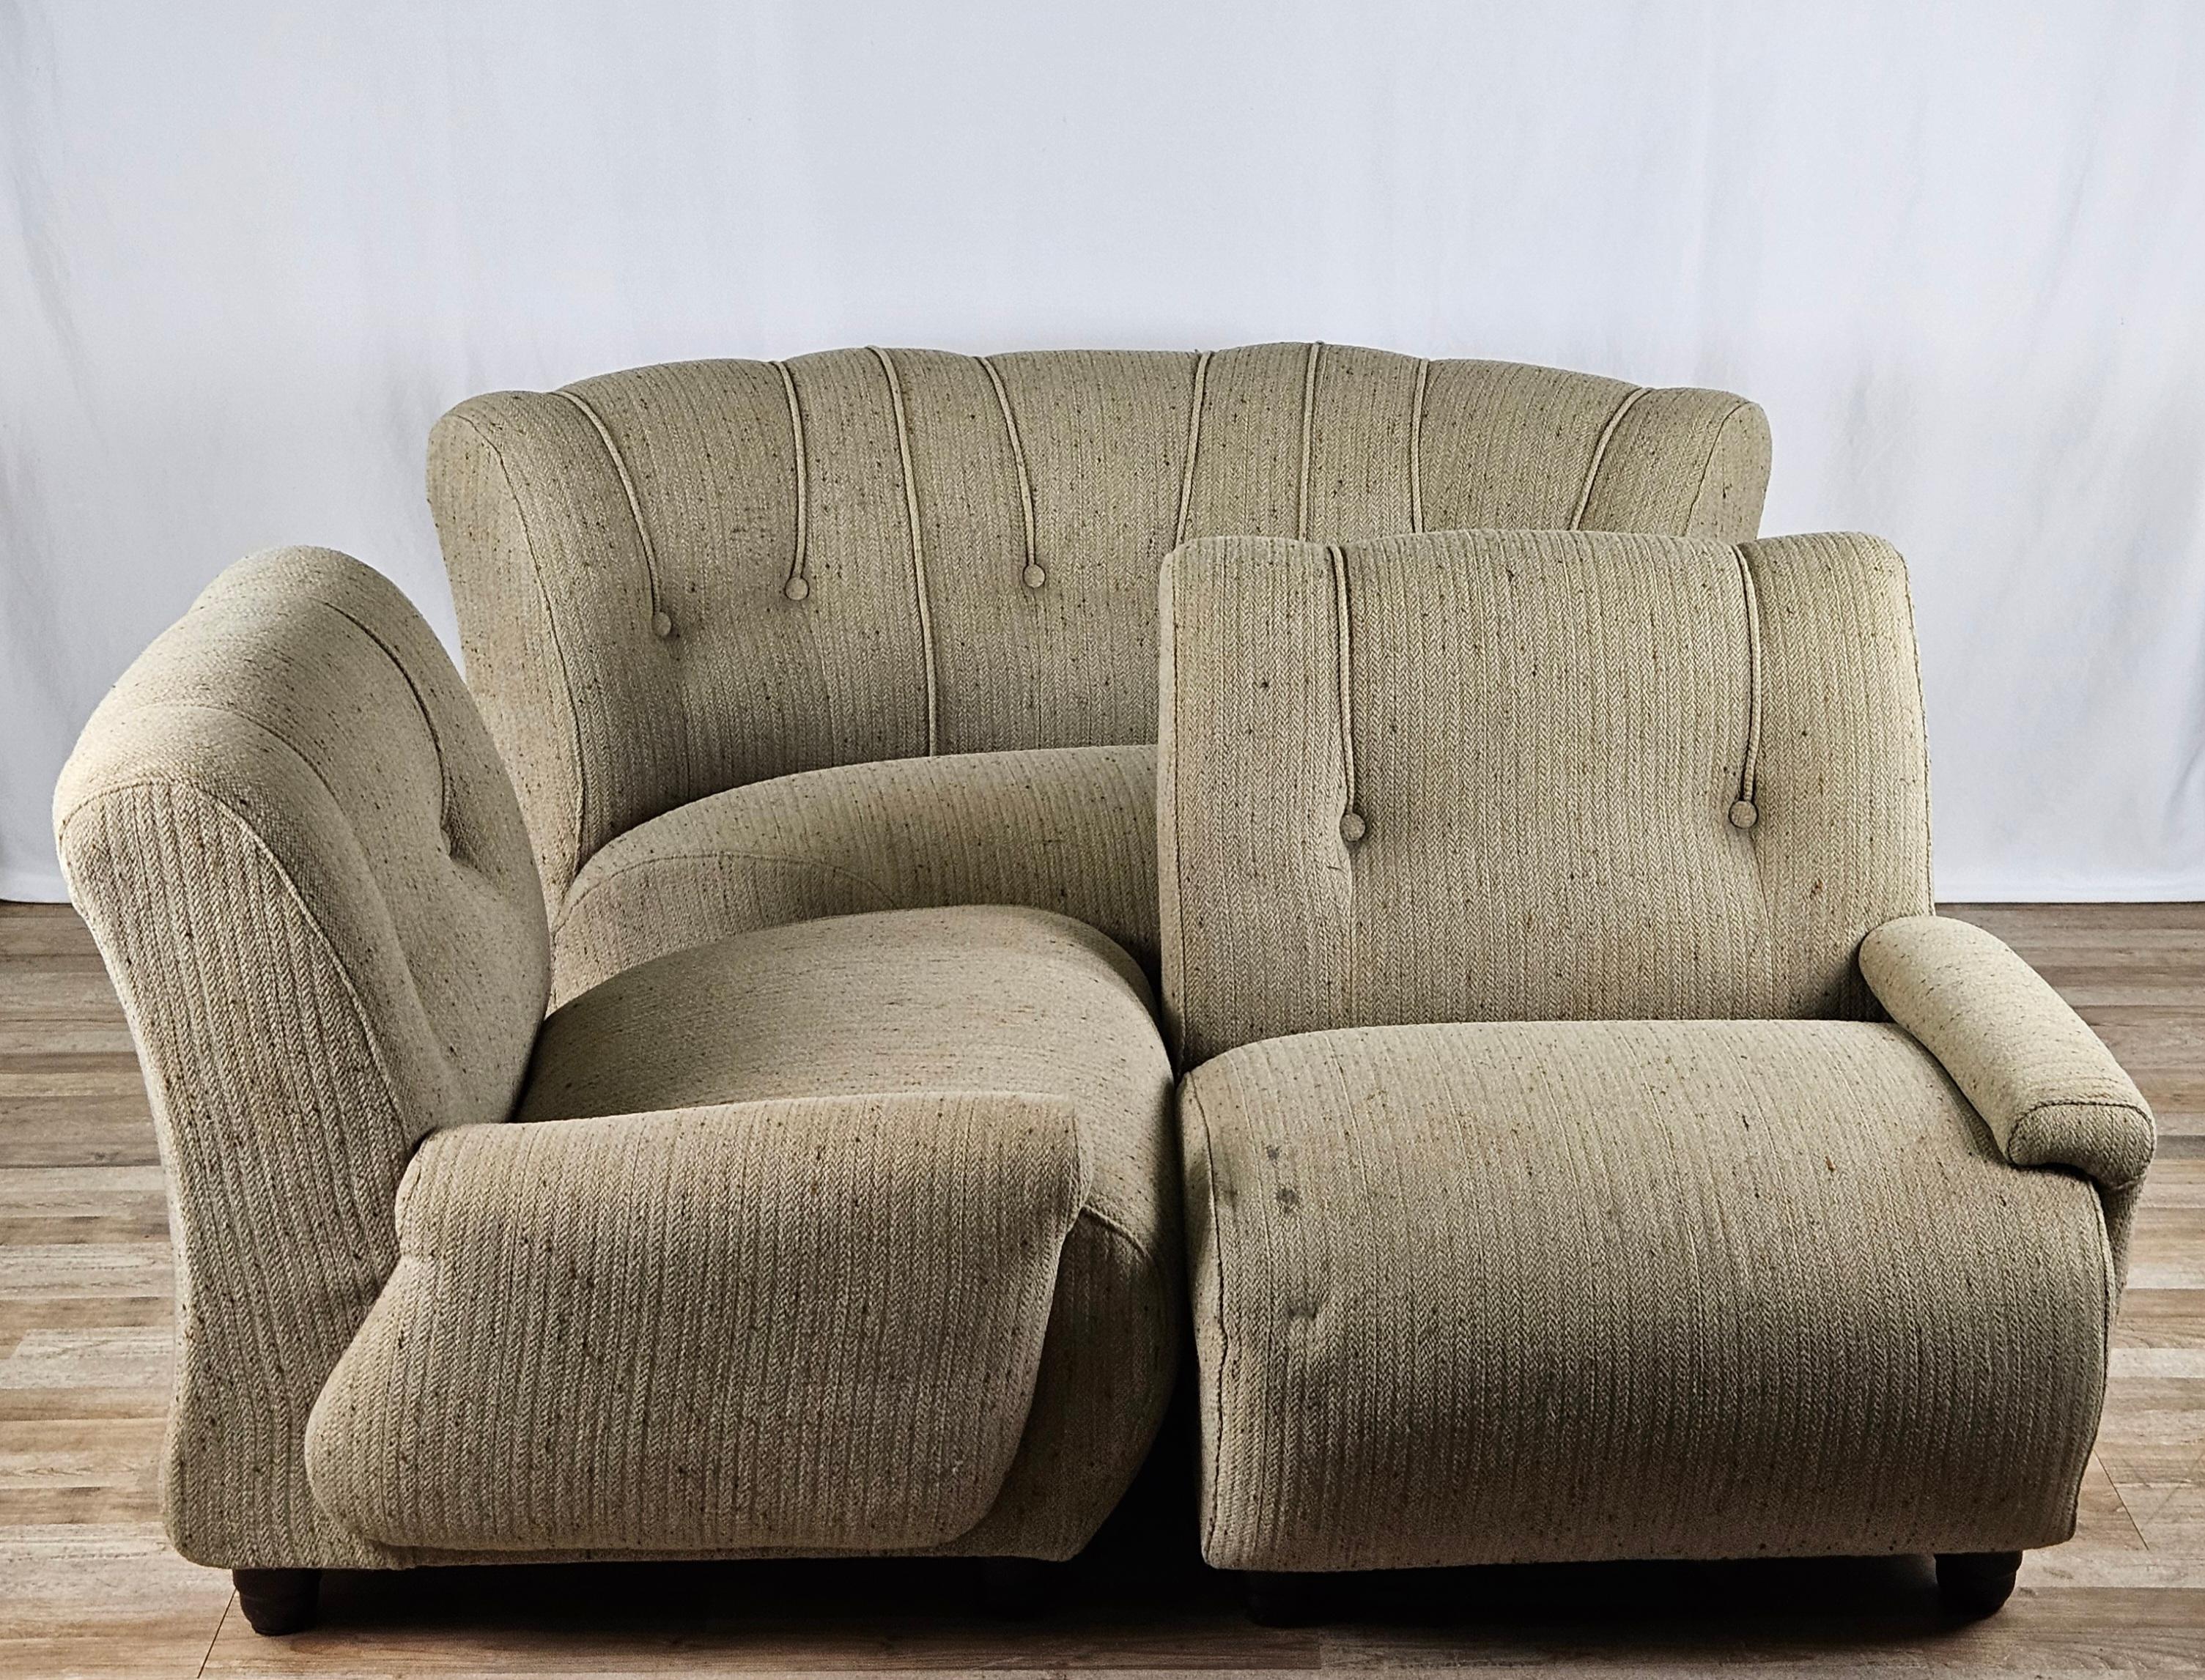 Modulares Sofa aus der Mitte des Jahrhunderts, bestehend aus vier bequemen Sitzen aus grauem Stoff mit Holzfüßen.

Er kann in verschiedenen Zusammenstellungen verwendet werden, mit der Eckbank und den beiden Seitensitzen oder nur mit den drei